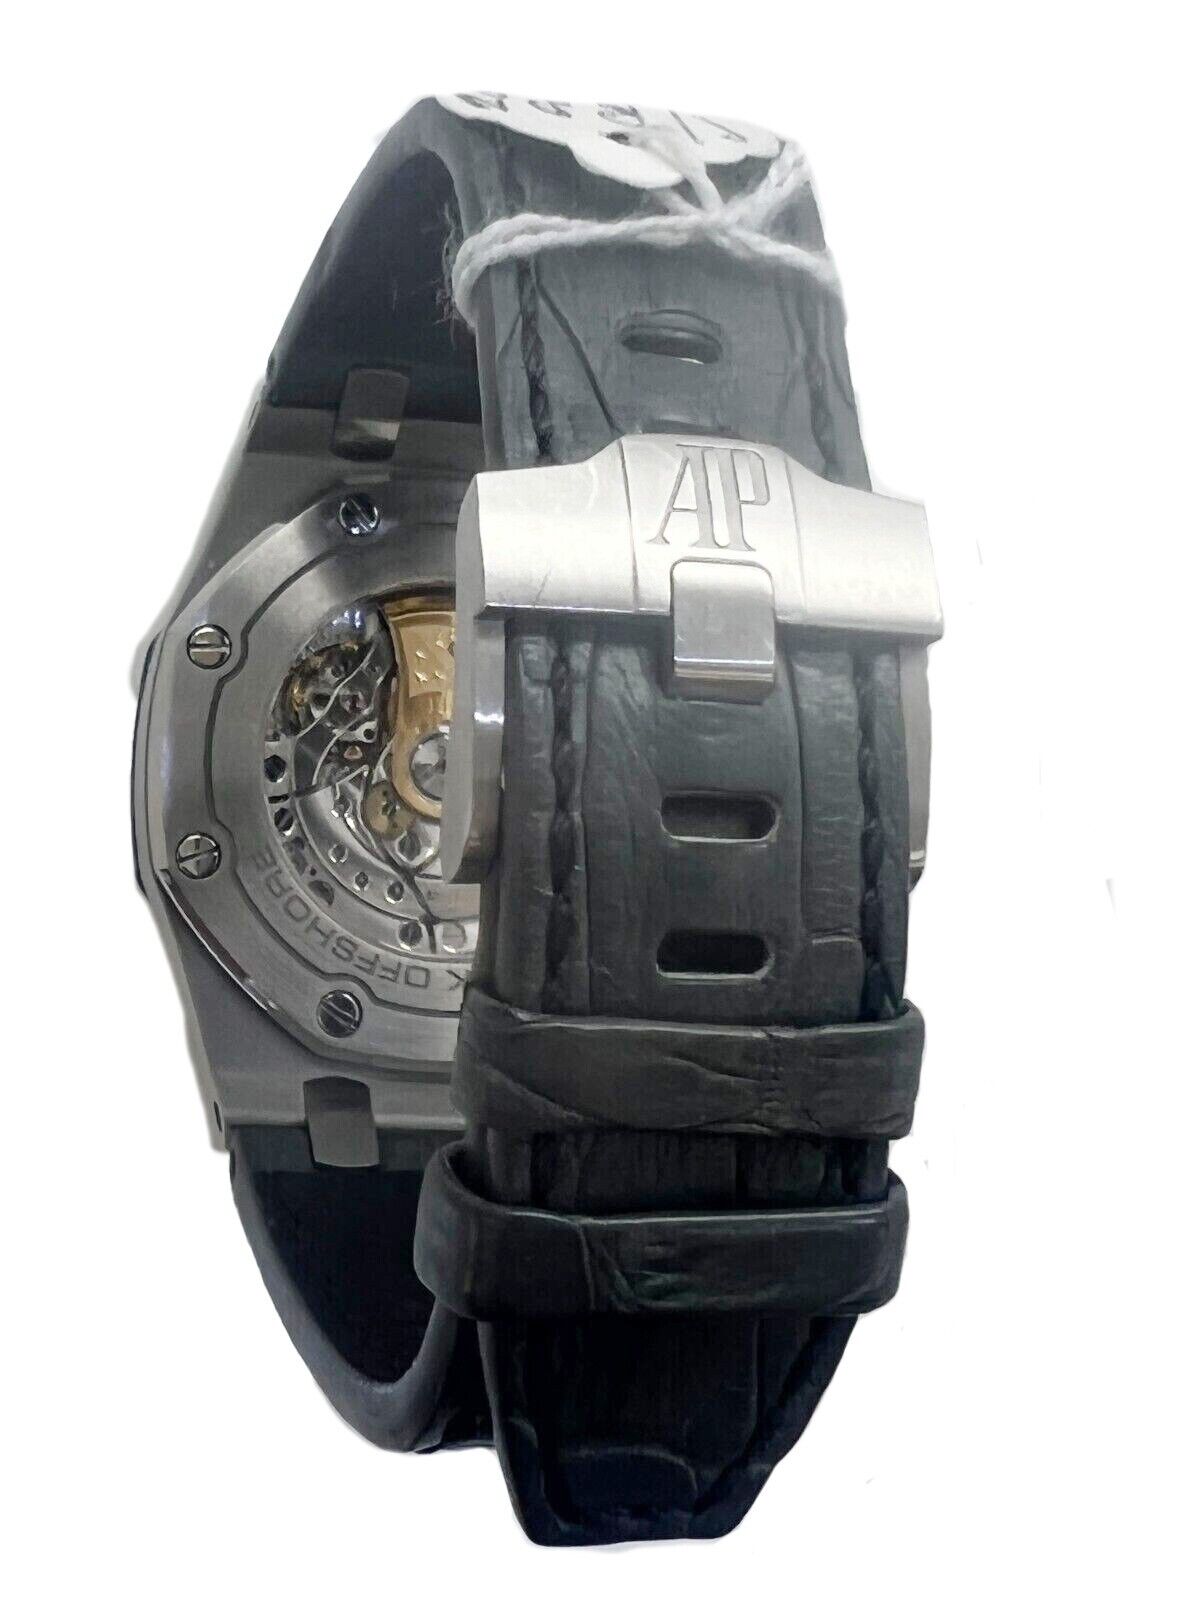 Audemard Piguet Royal Oak Offshore Elephant Men's Watch Mint Papers